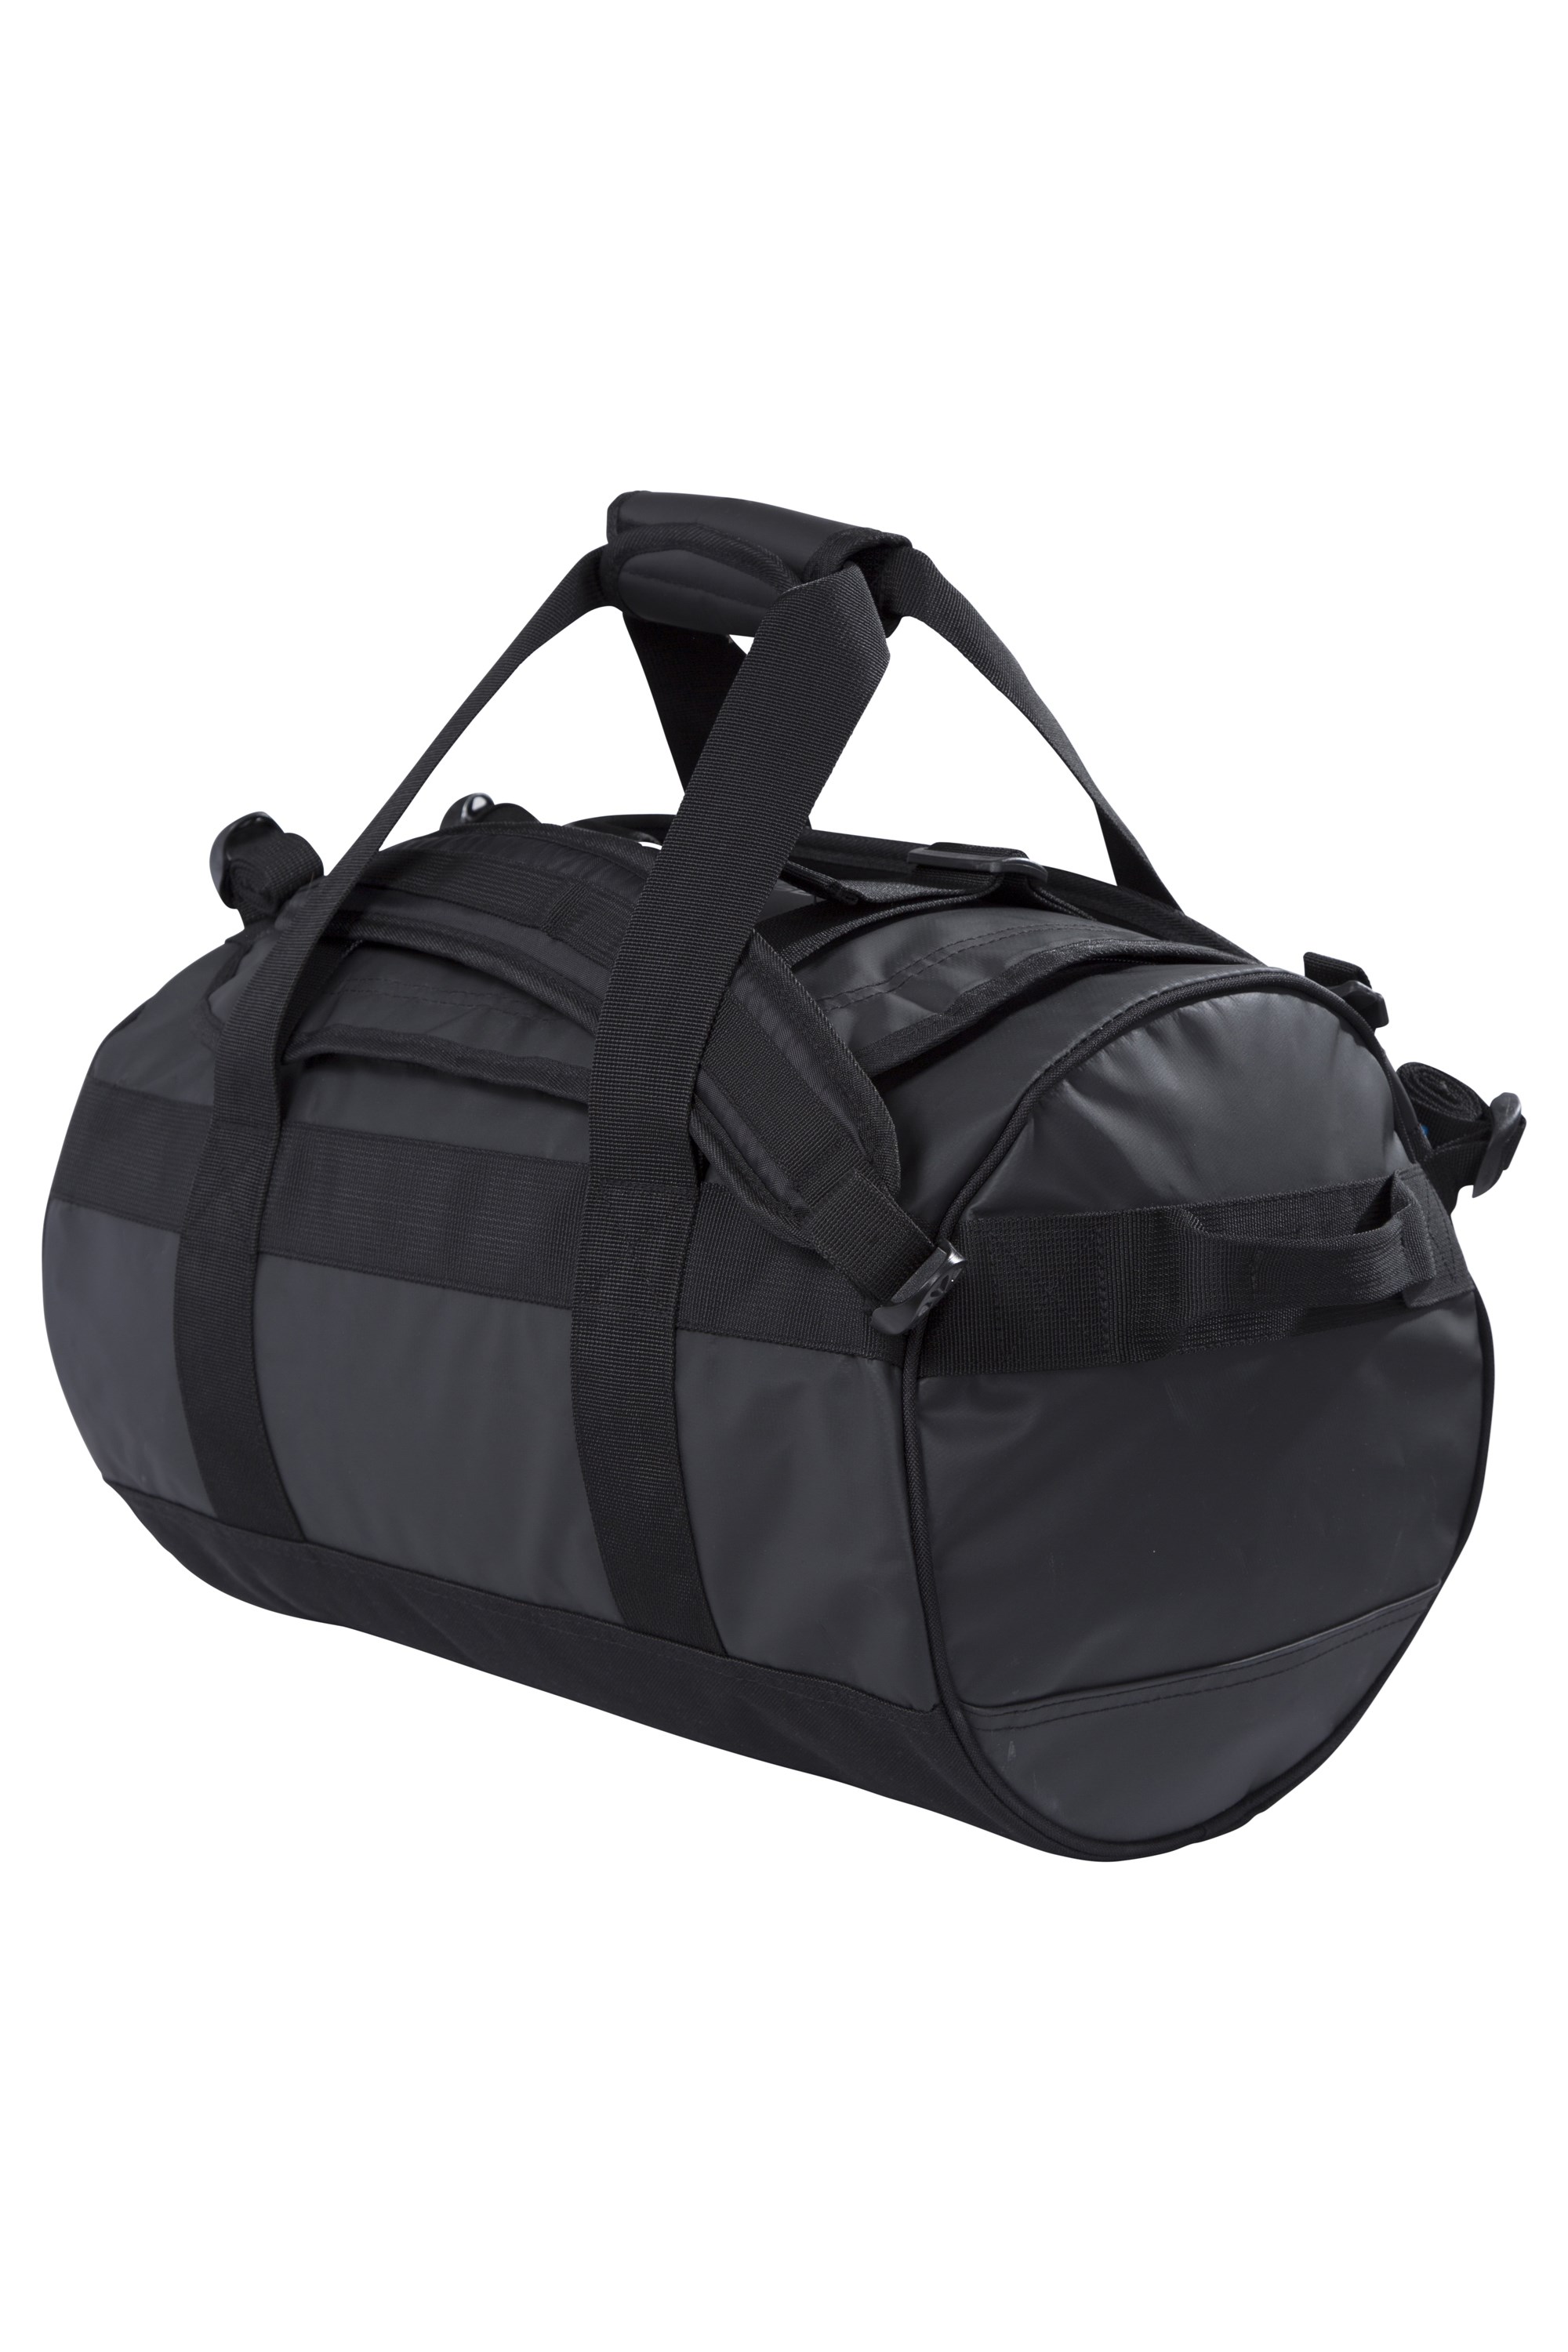 Cargo Bag - 40 Litres - Black